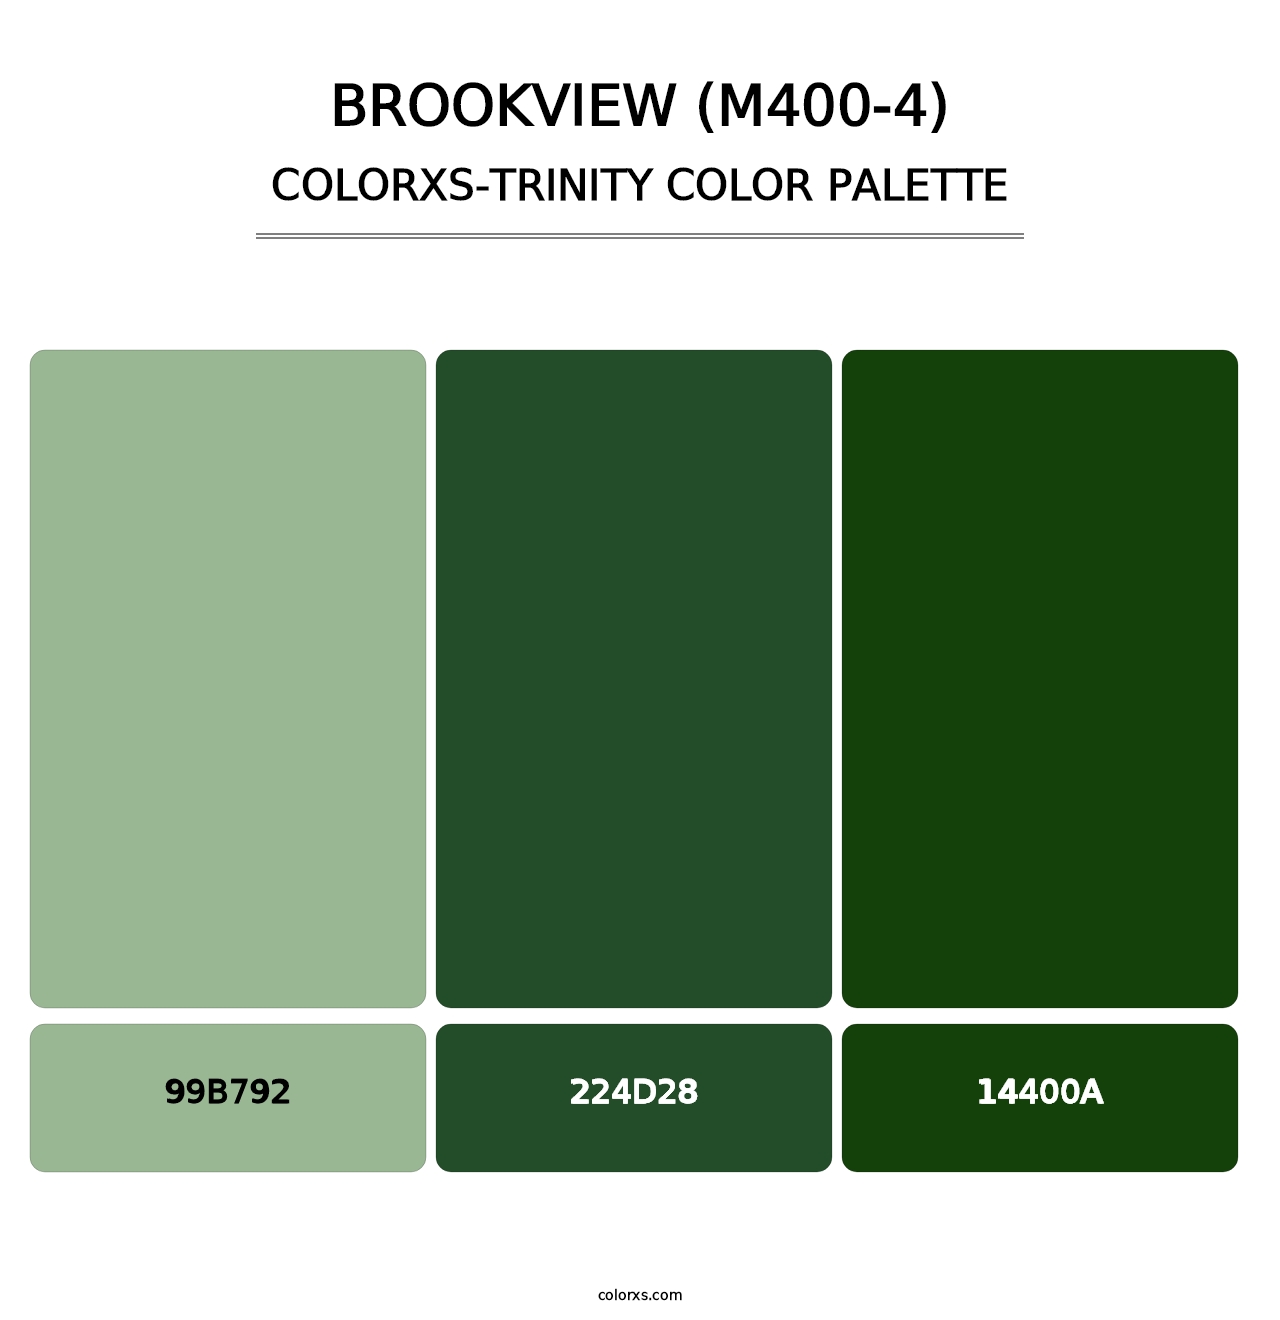 Brookview (M400-4) - Colorxs Trinity Palette